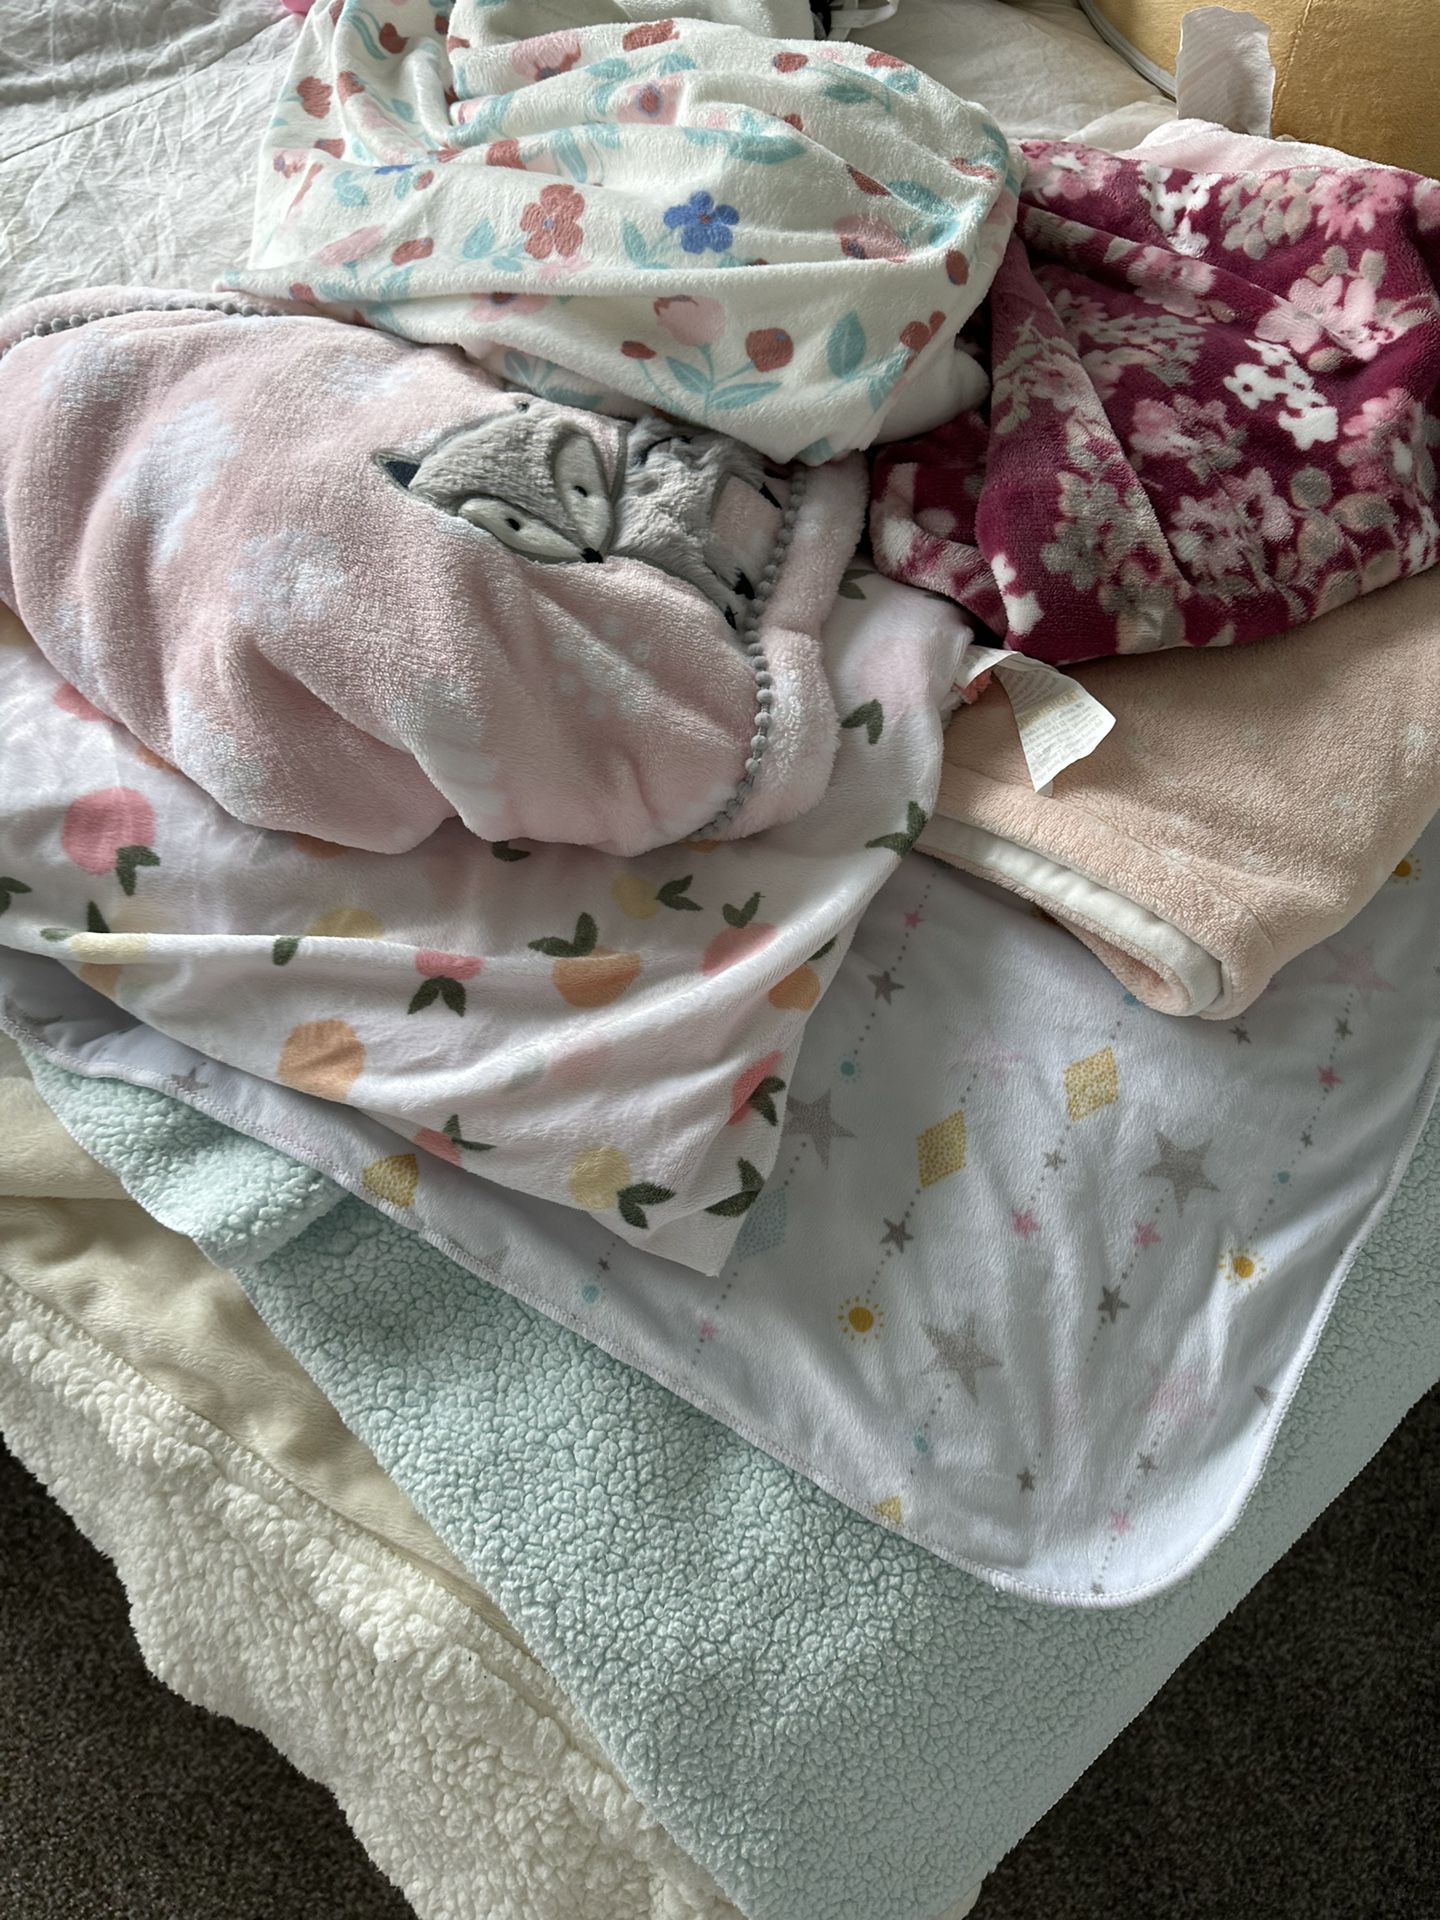 7 Infant Baby Girl Blankets